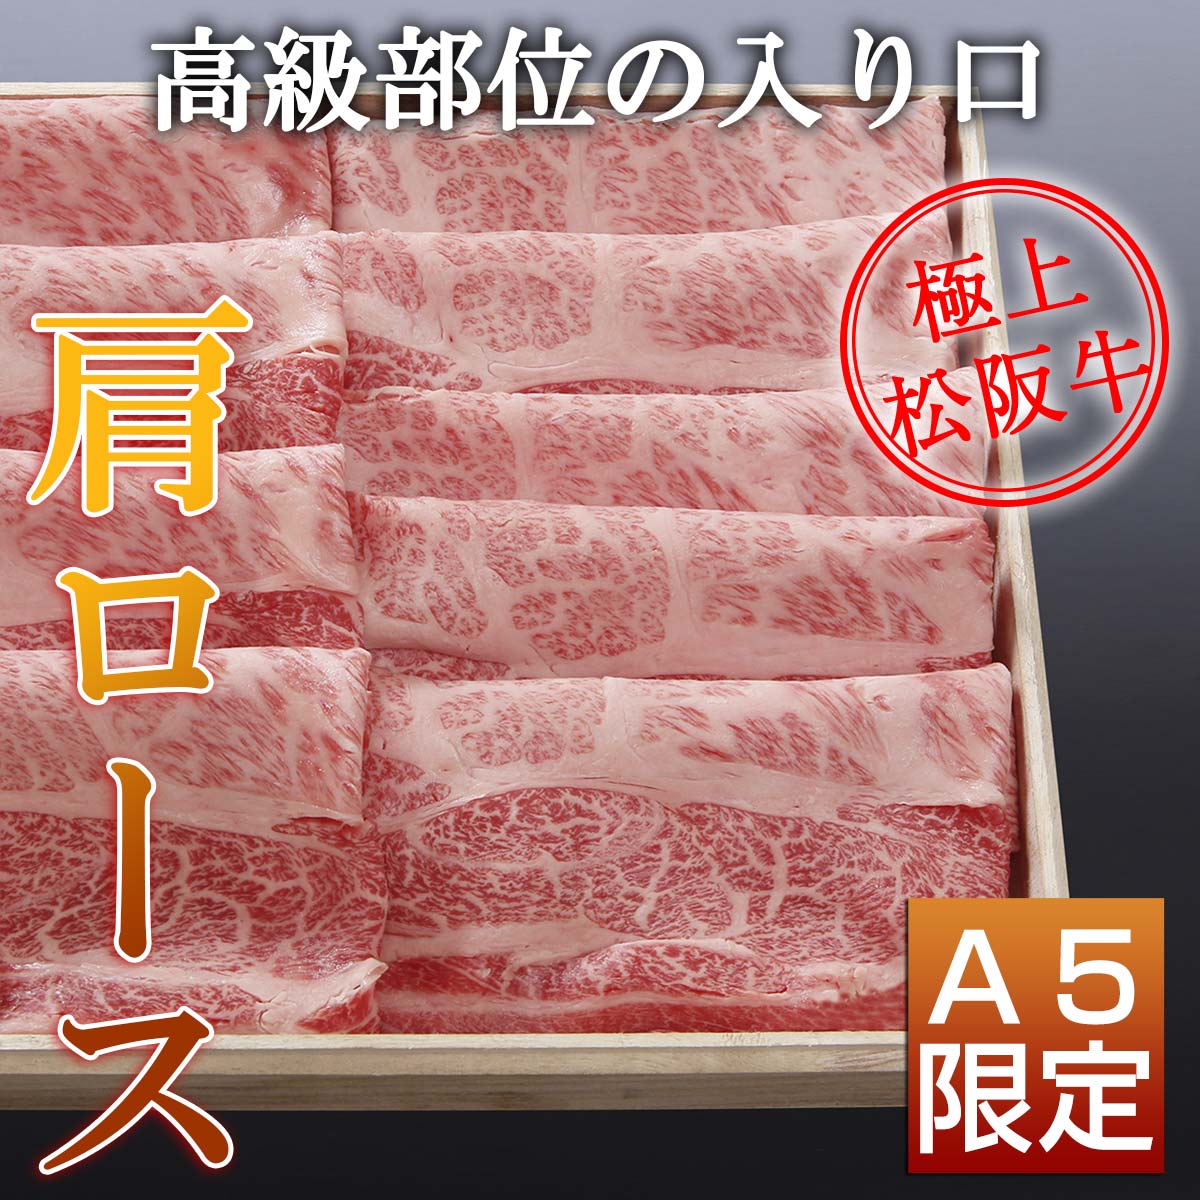 松阪牛上すき焼き3種食べ比べ